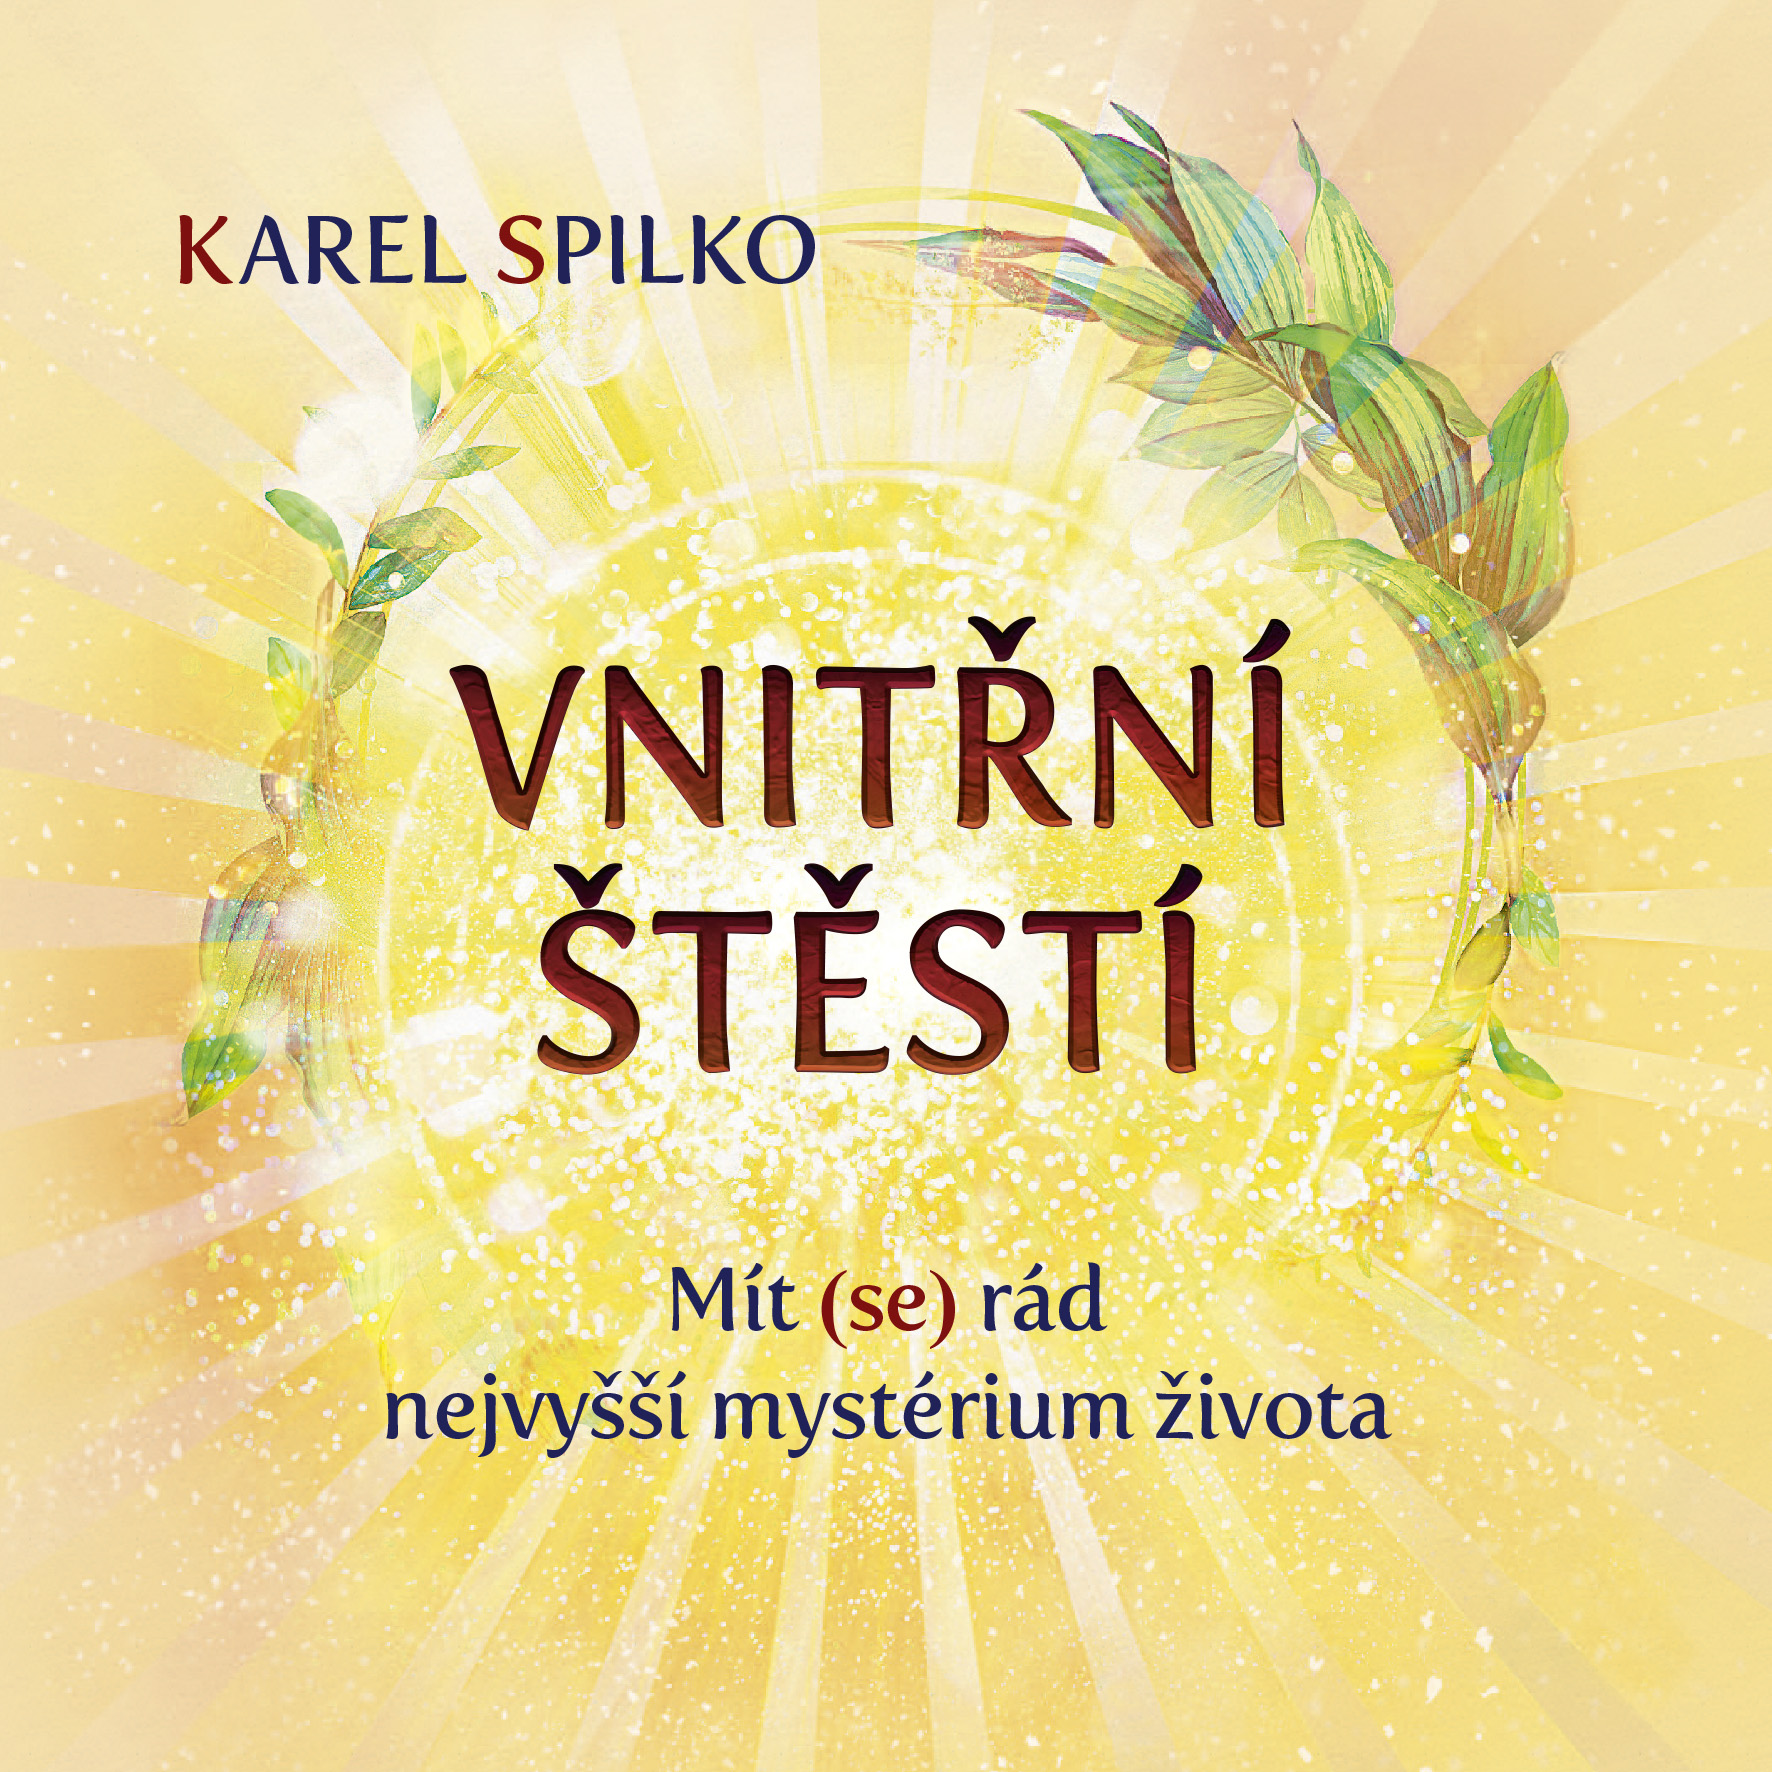 E-kniha Vnitřní štěstí - Karel Spilko